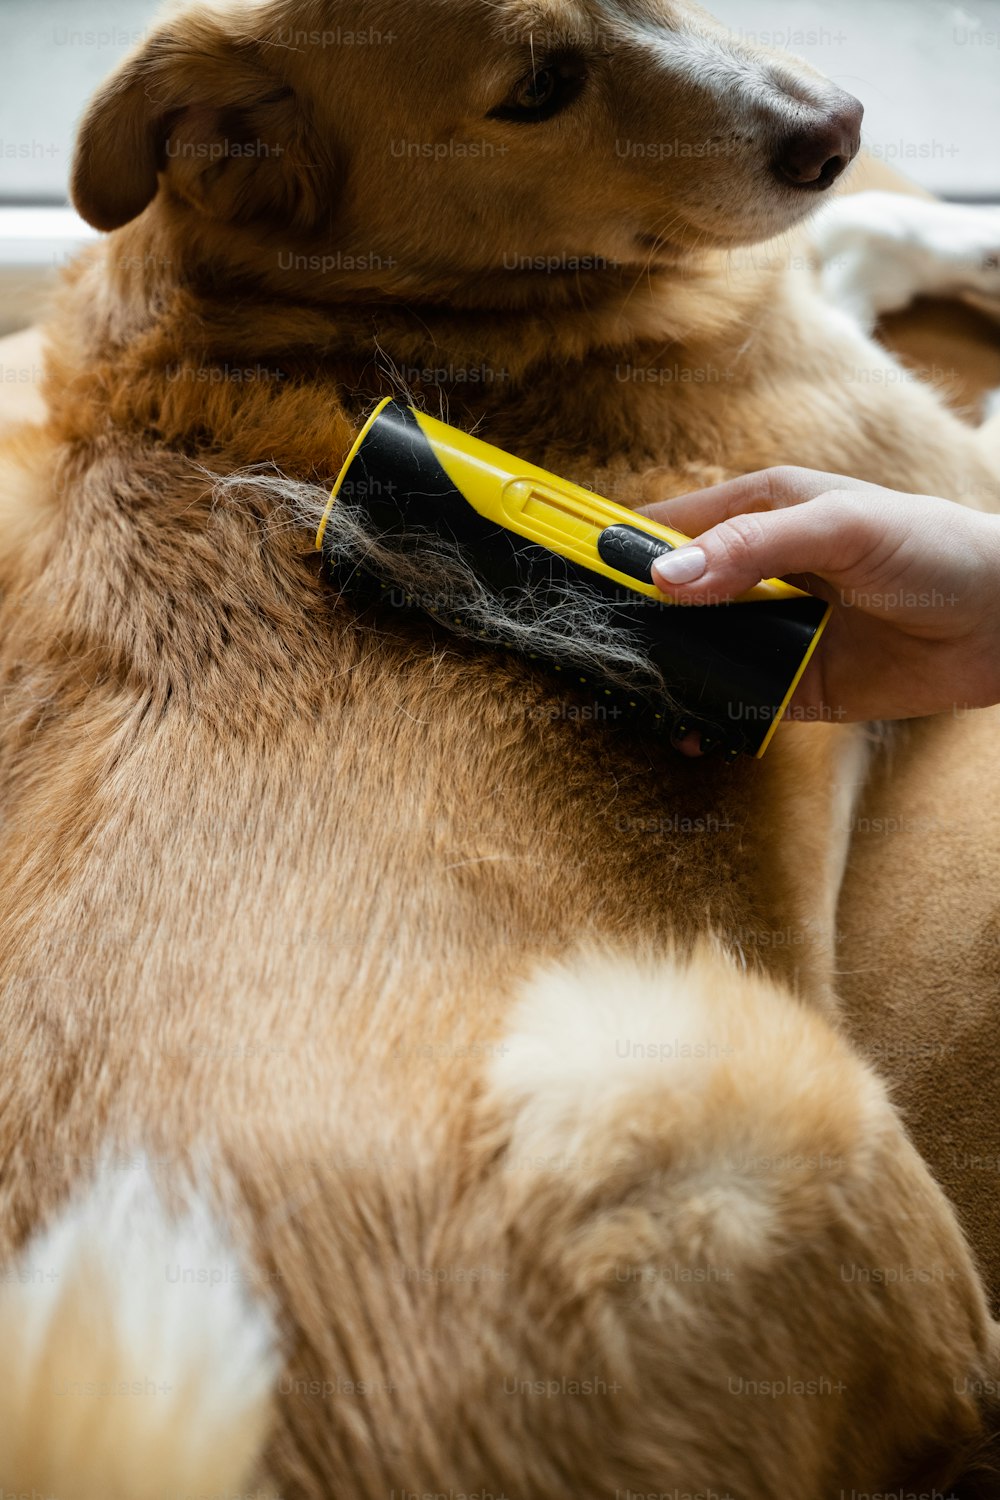 Un perro siendo preparado por una persona con un peine amarillo